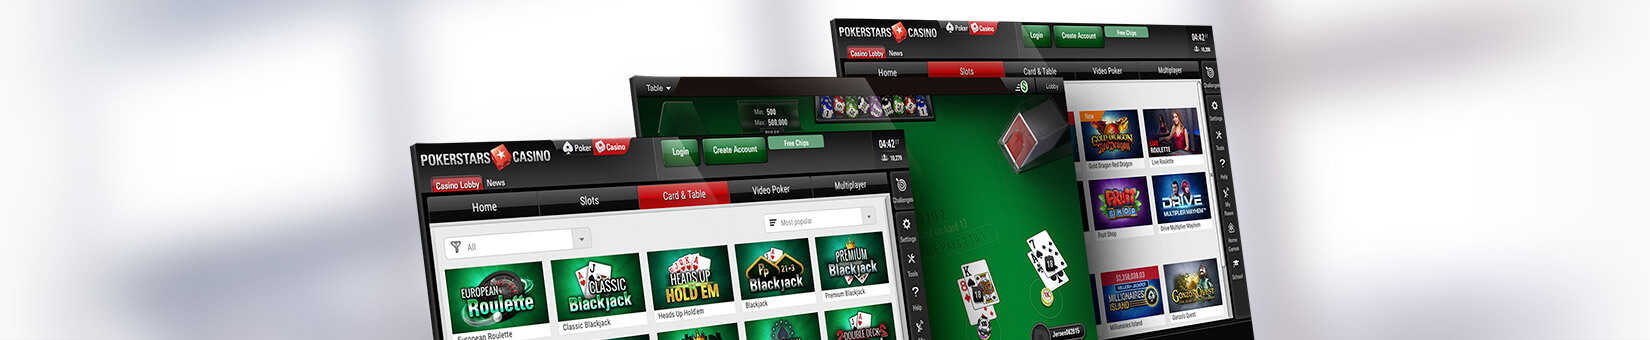 Pokerstars es dinero real privacidad casino Santiago - 37593